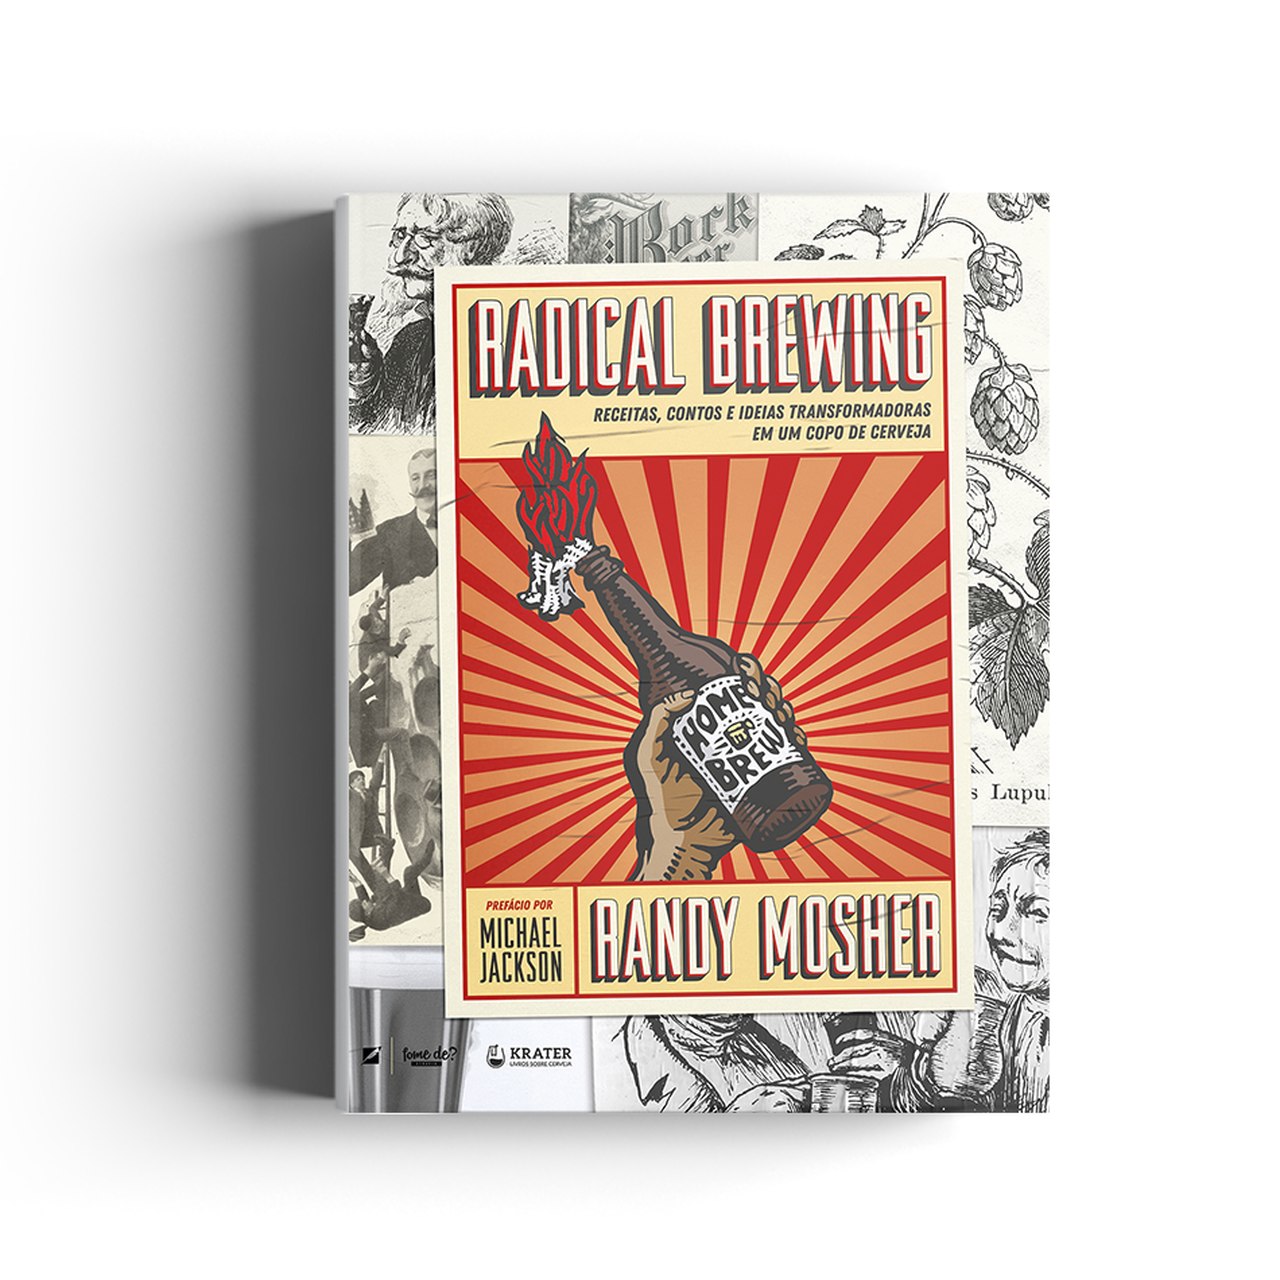 Livro Radical Brewing (Randy Mosher) - Maria Cervejeira